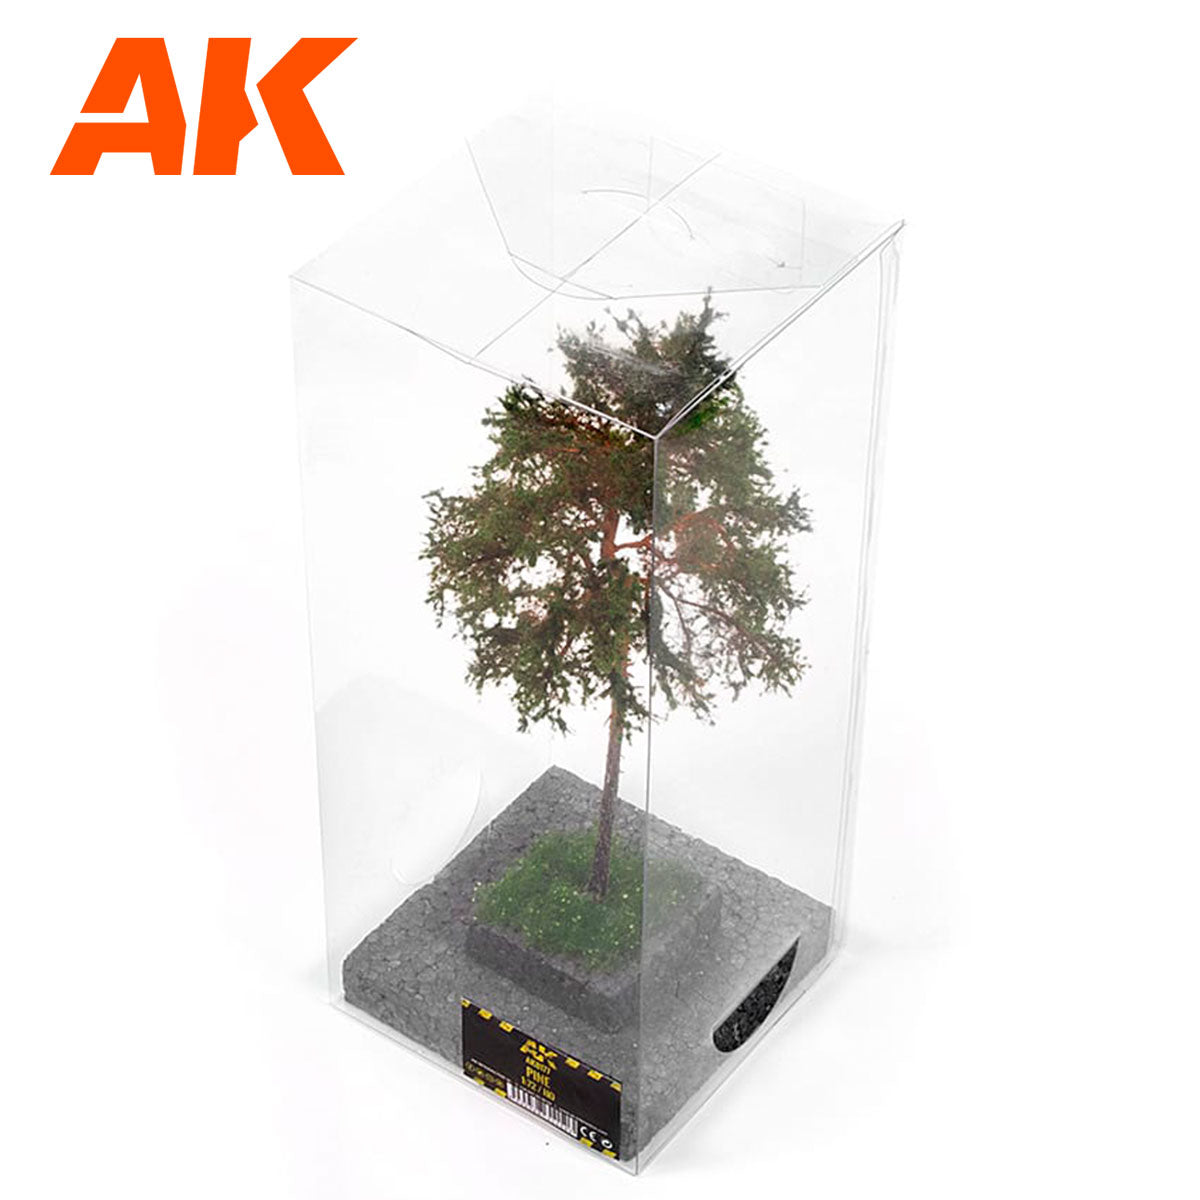 AK8177 - Pine Tree 1/72